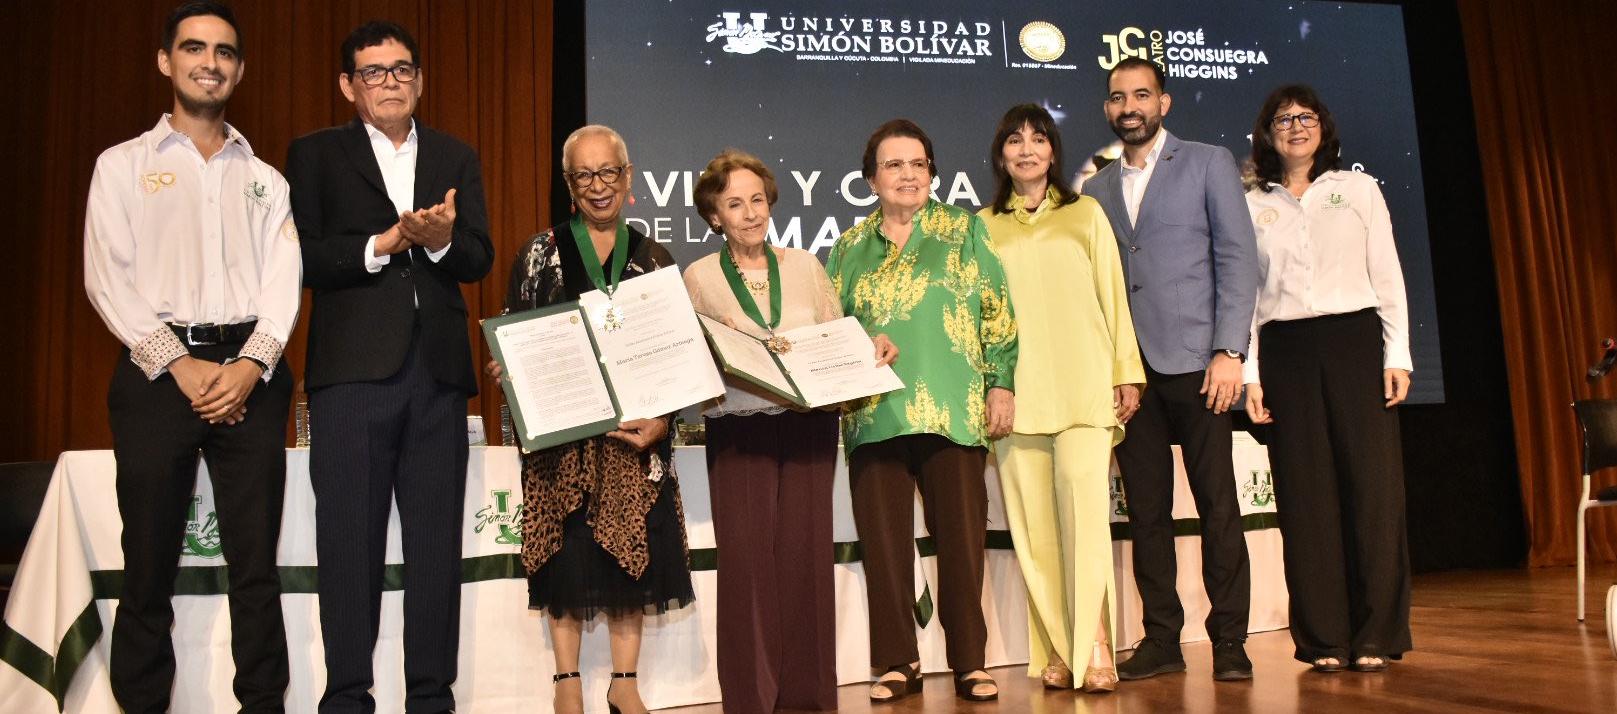 Las directivas de la Universidad Simón Bolívar en el homenaje a las pianistas Teresita Gómez y Blanca Uribe